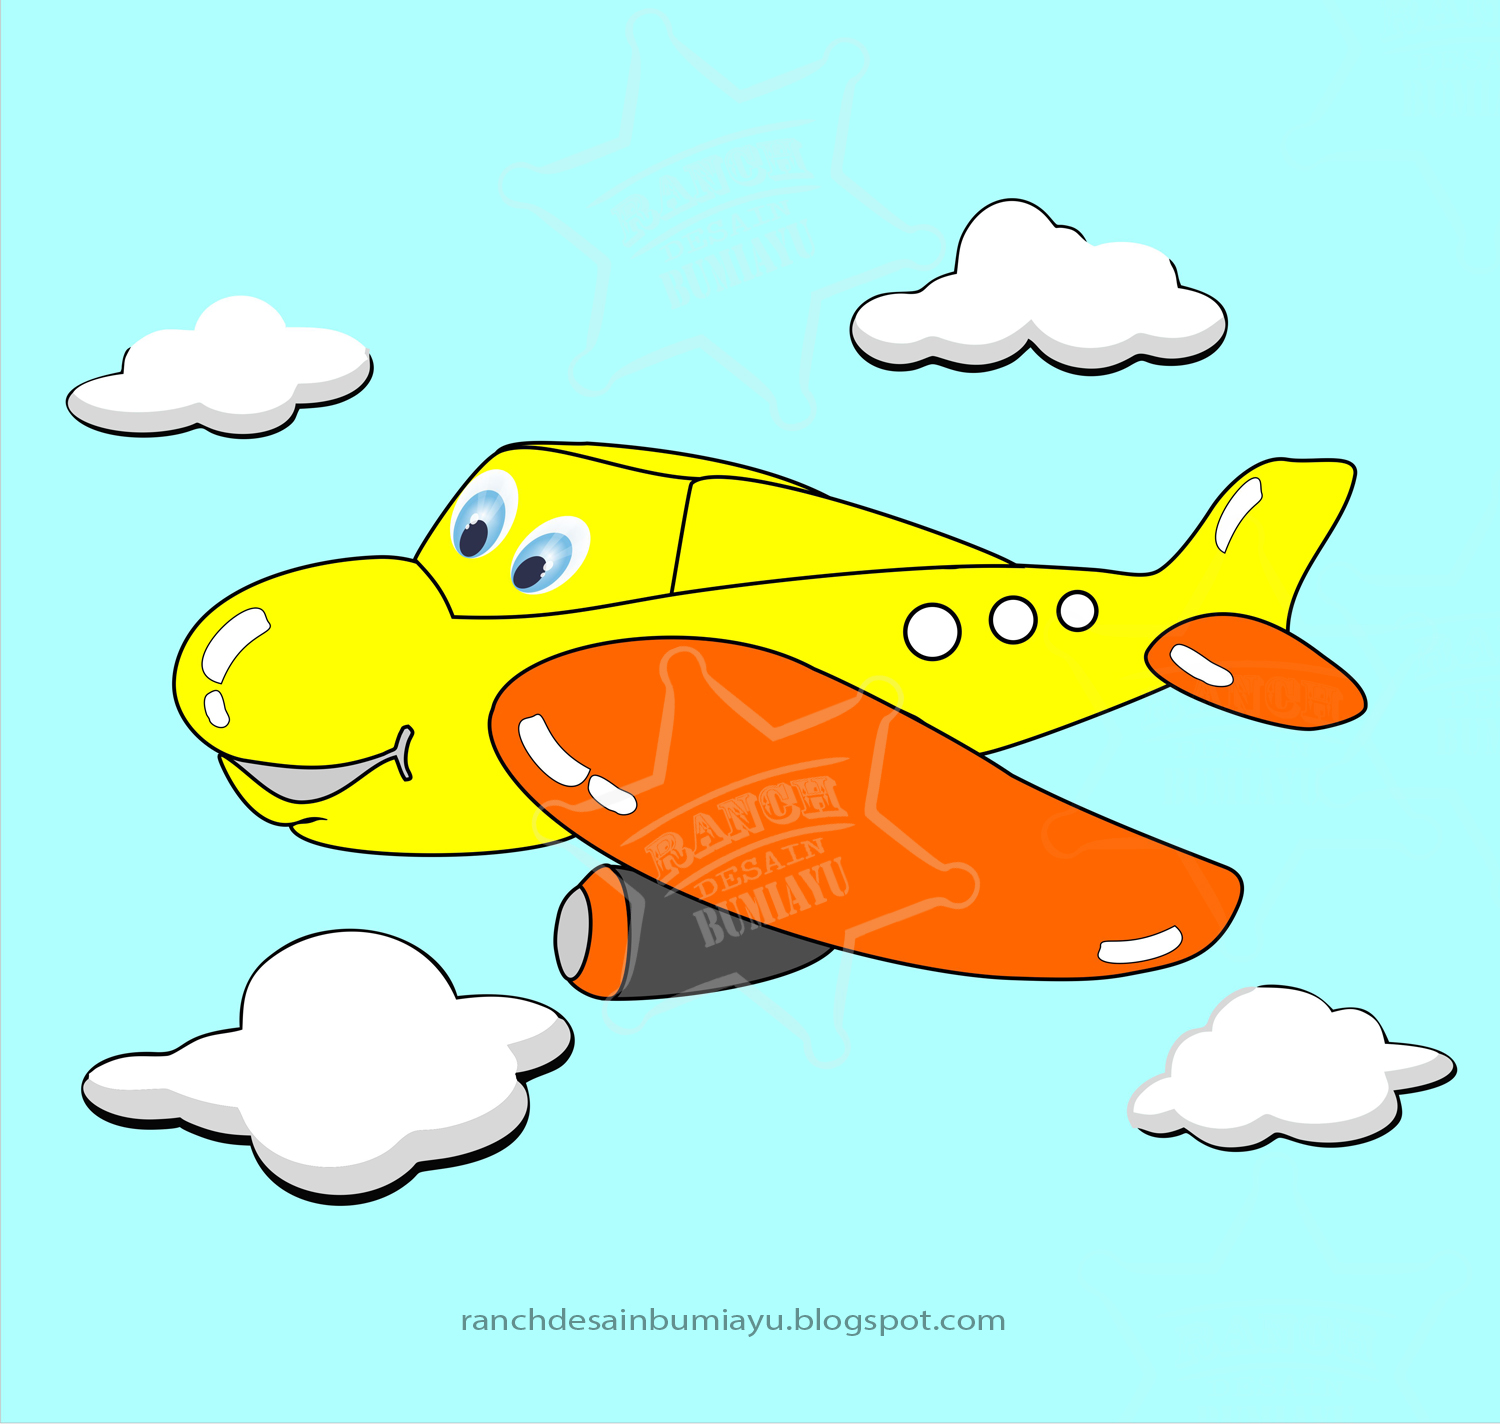 Gambar Lucu Animasi Pesawat  Kolektor Lucu